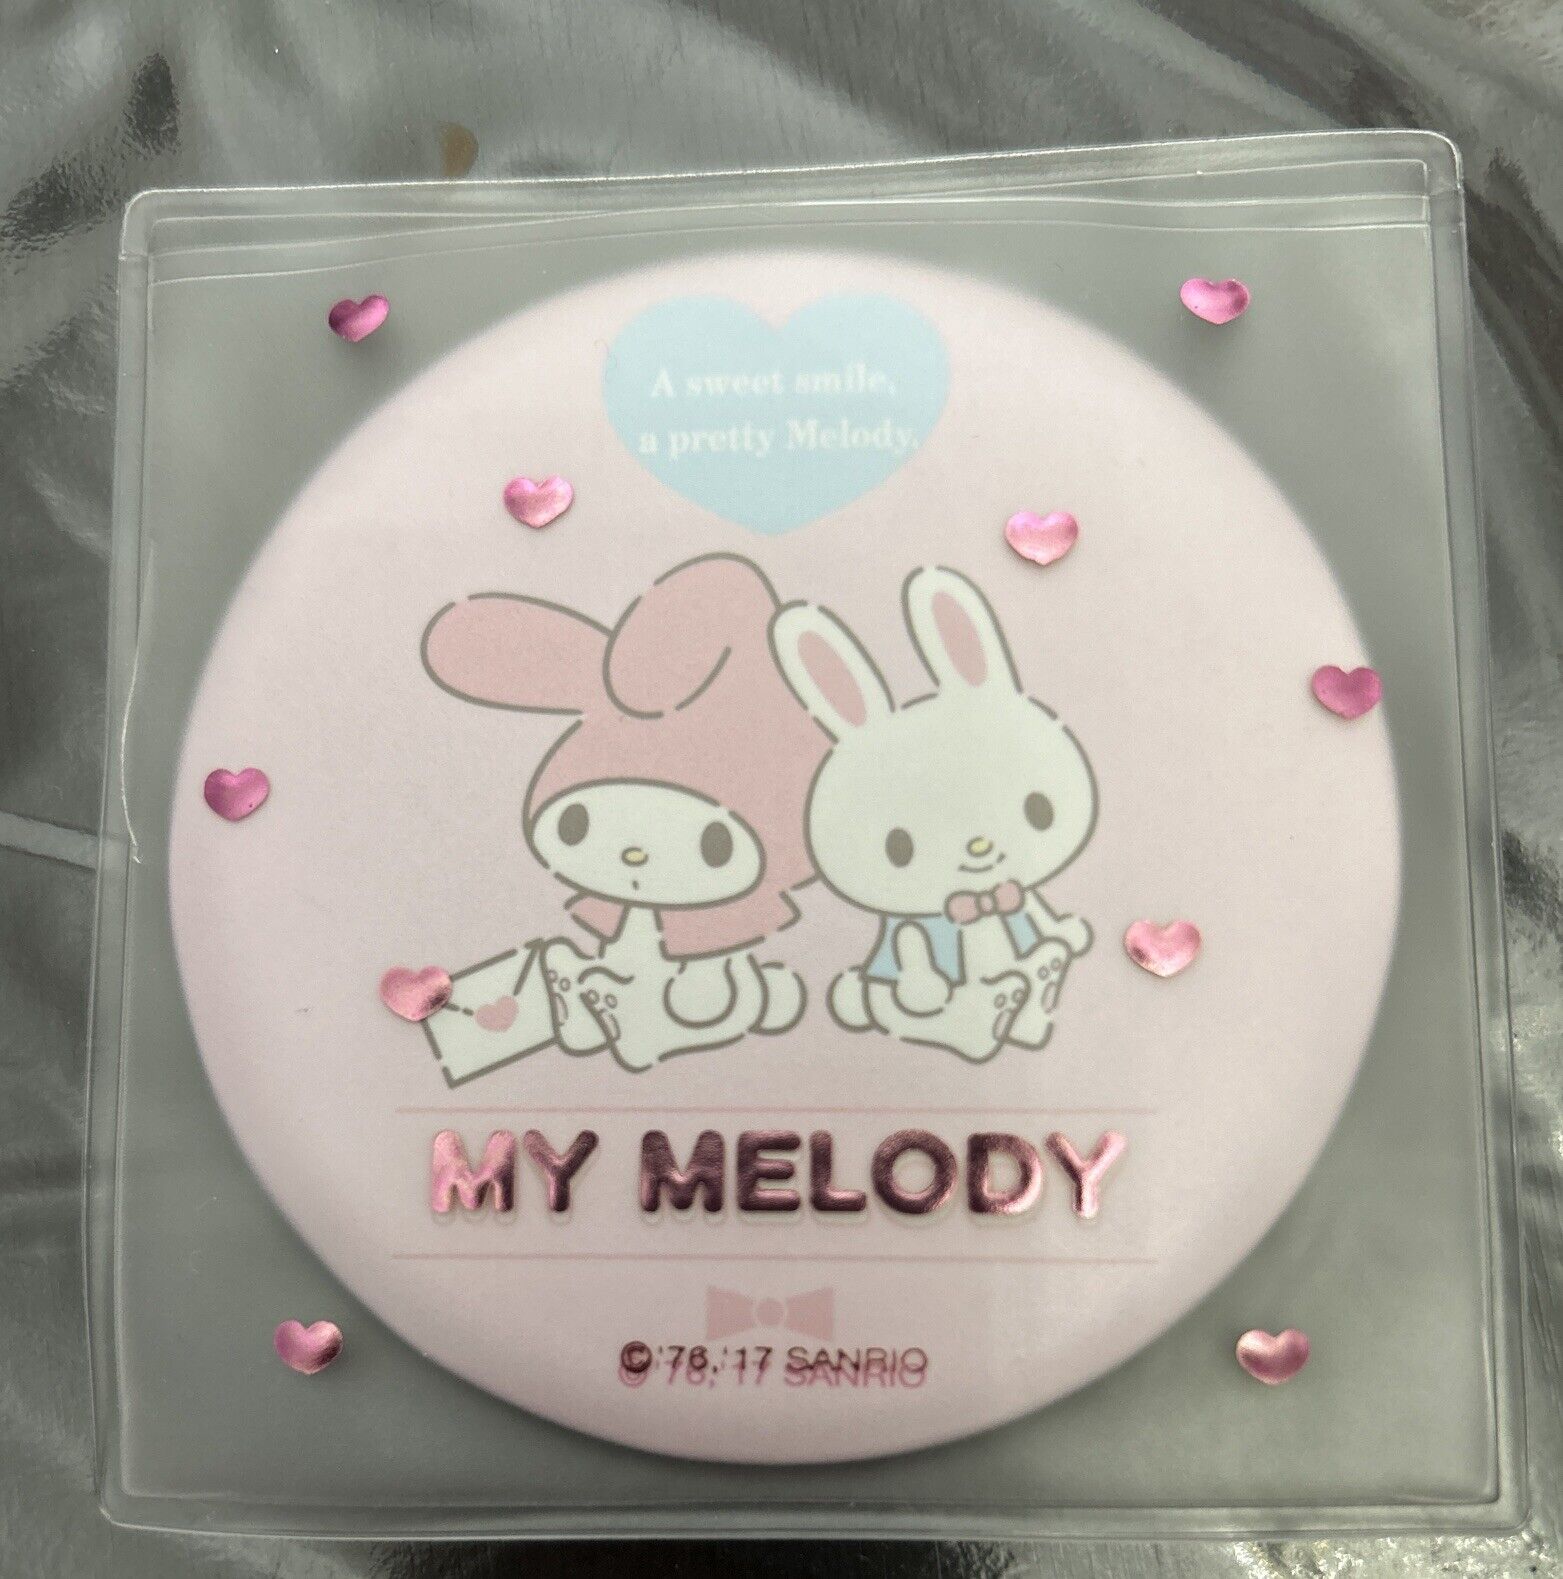 Sanrio Original My Melody Compact Mirror HTF Vintage 2017